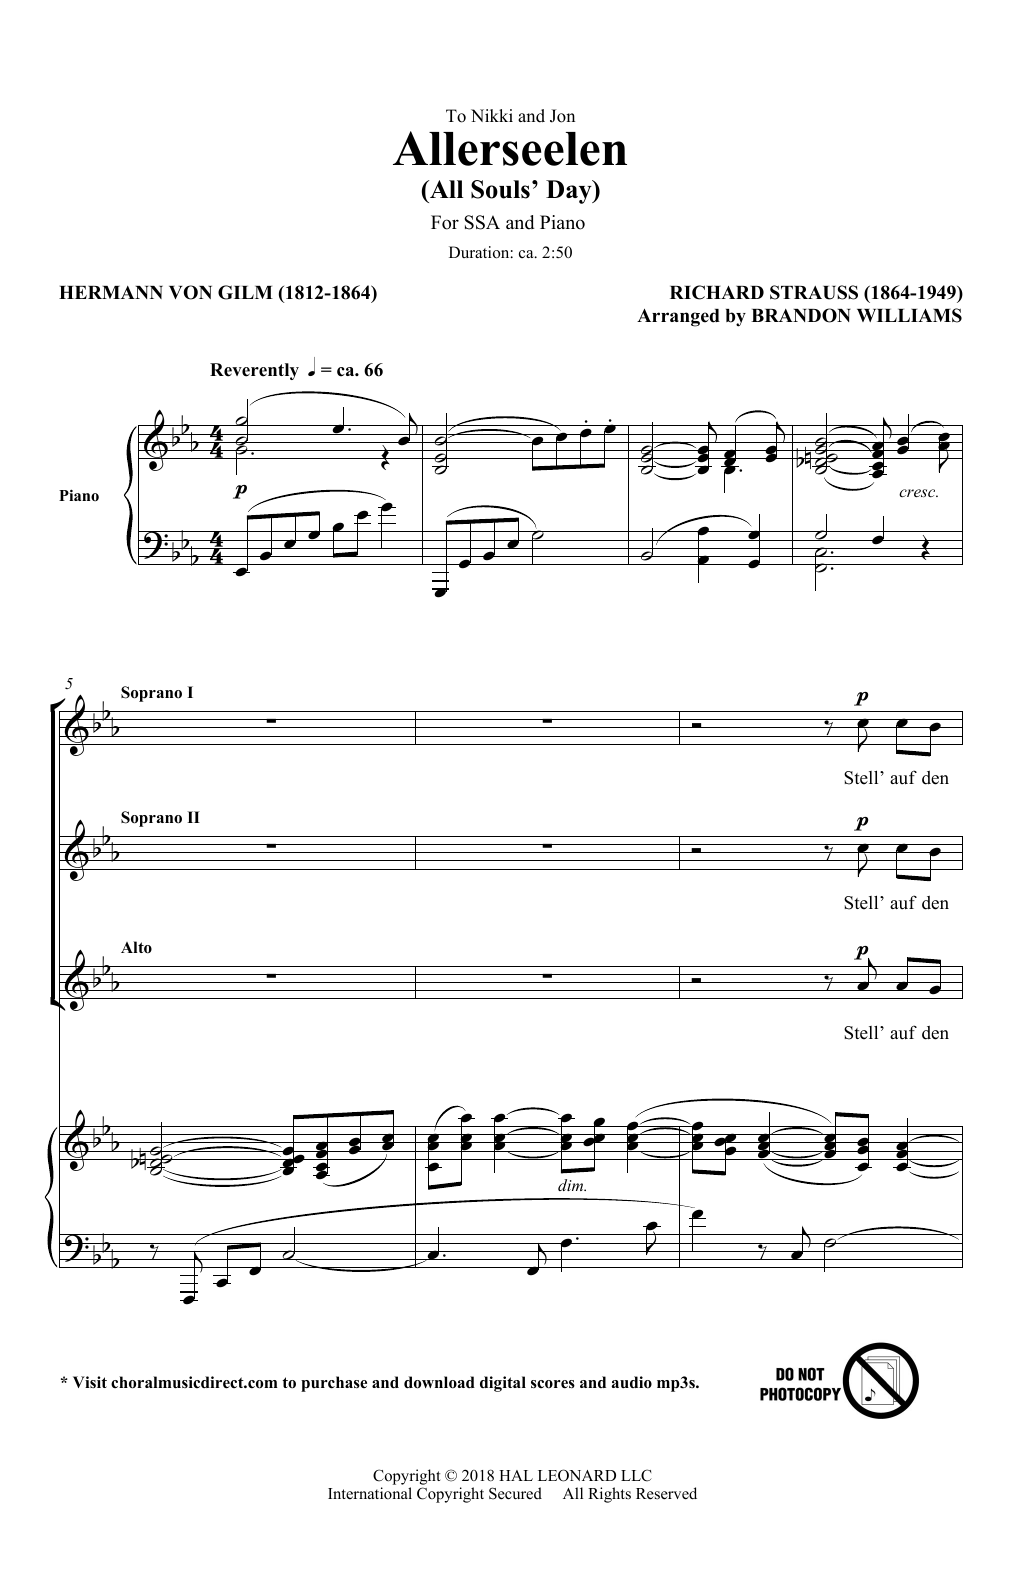 Richard Strauss & Hermann von Gilm Allerseelen (arr. Brandon Williams) Sheet Music Notes & Chords for SSA Choir - Download or Print PDF